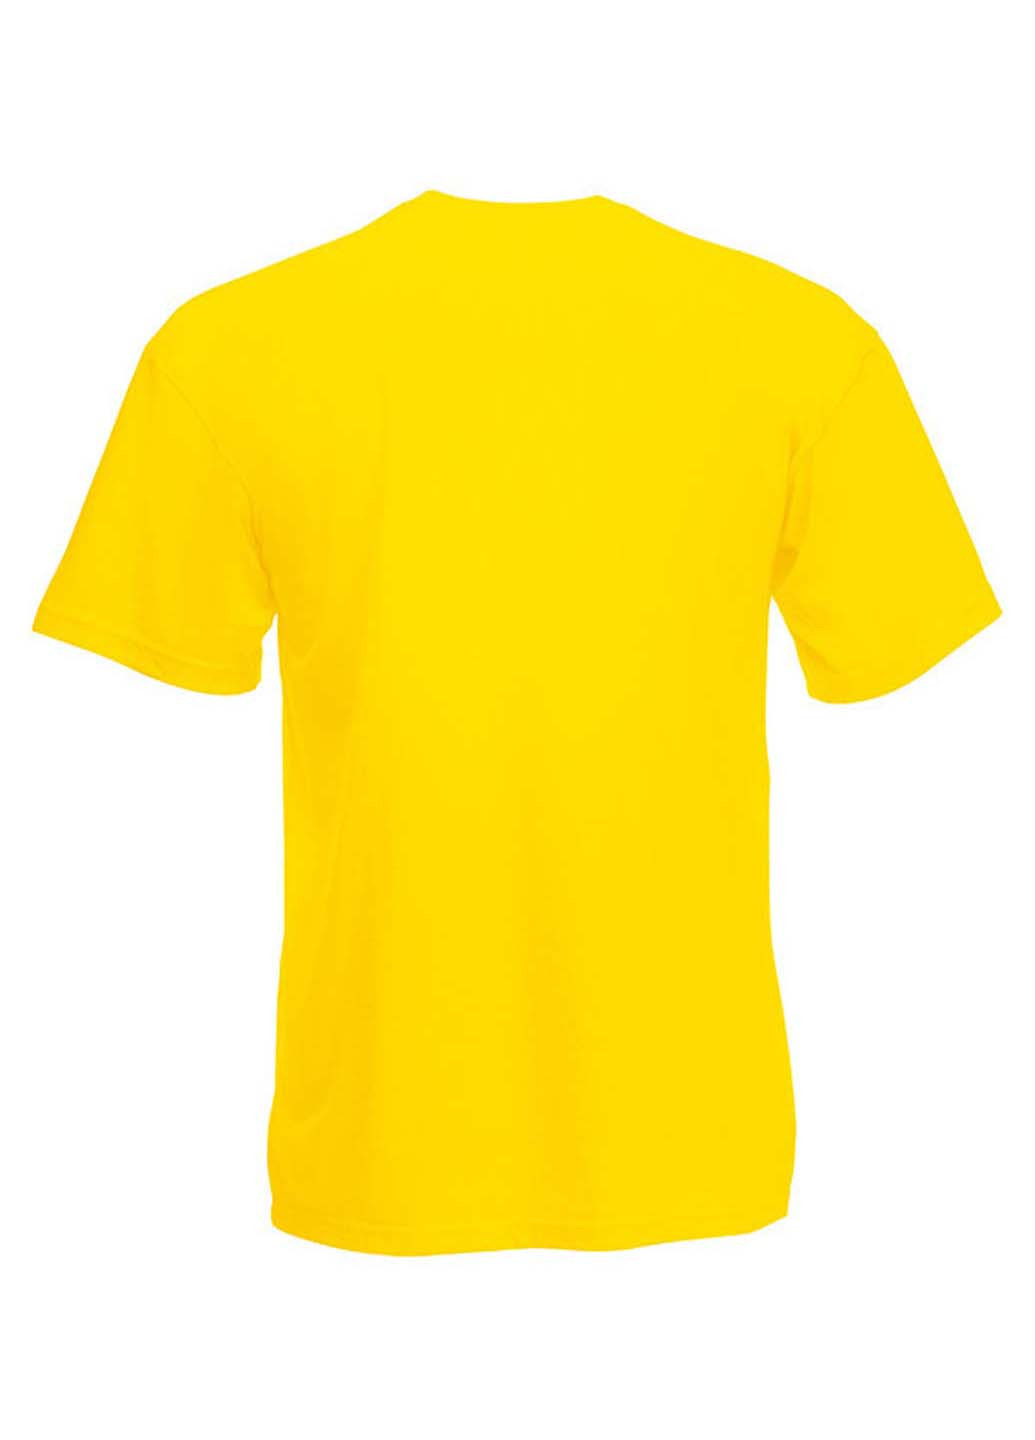 Желтая демисезонная футболка Fruit of the Loom